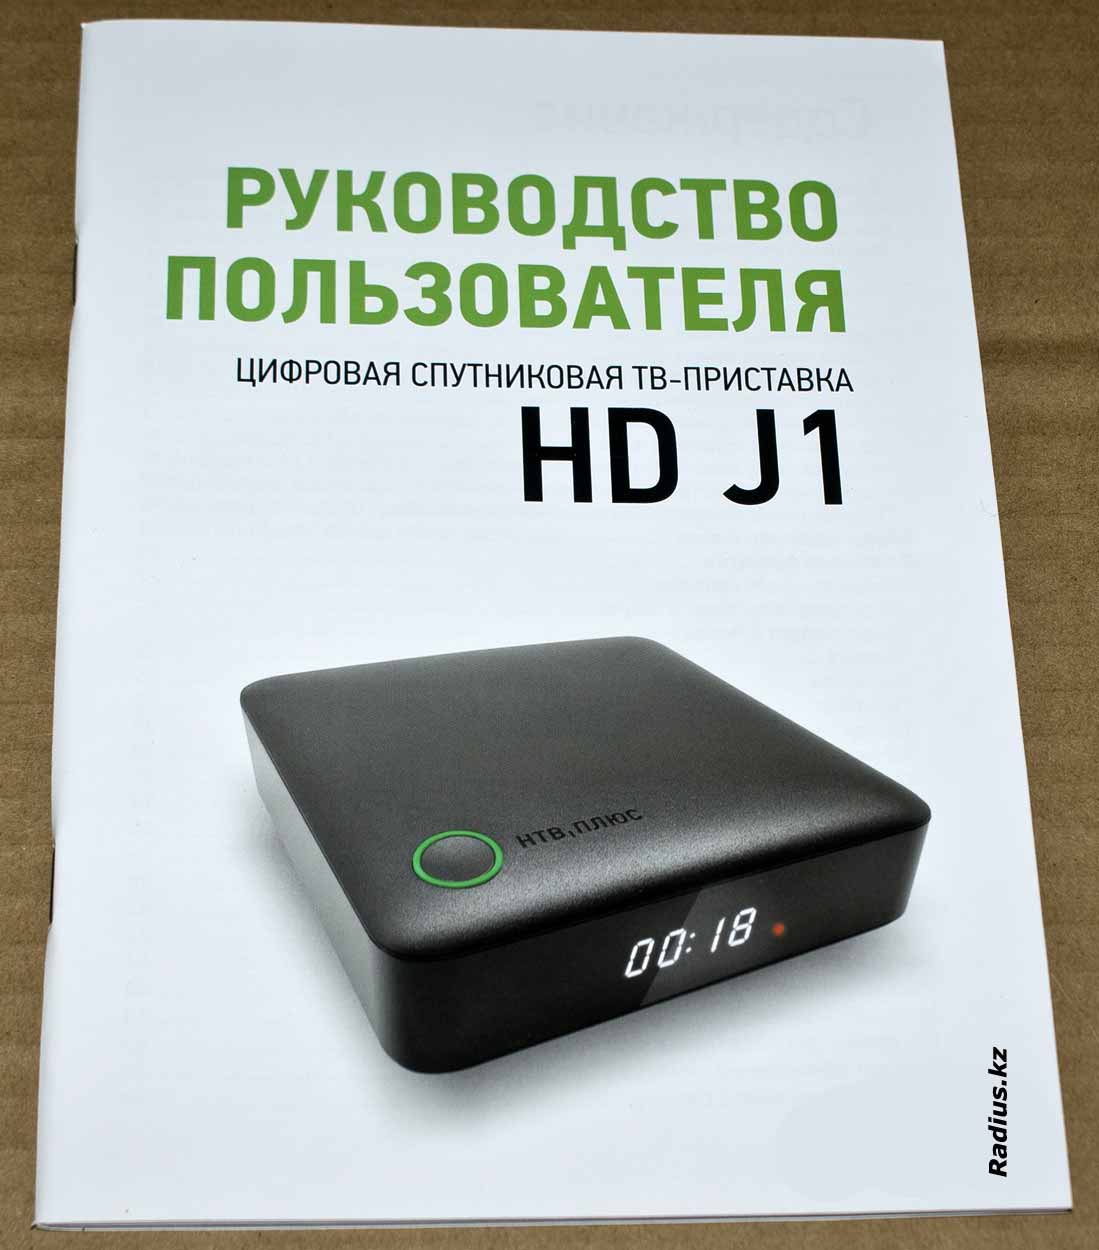 НТВ Плюс HD J1 цифровая ТВ-приставка руководство пользователя